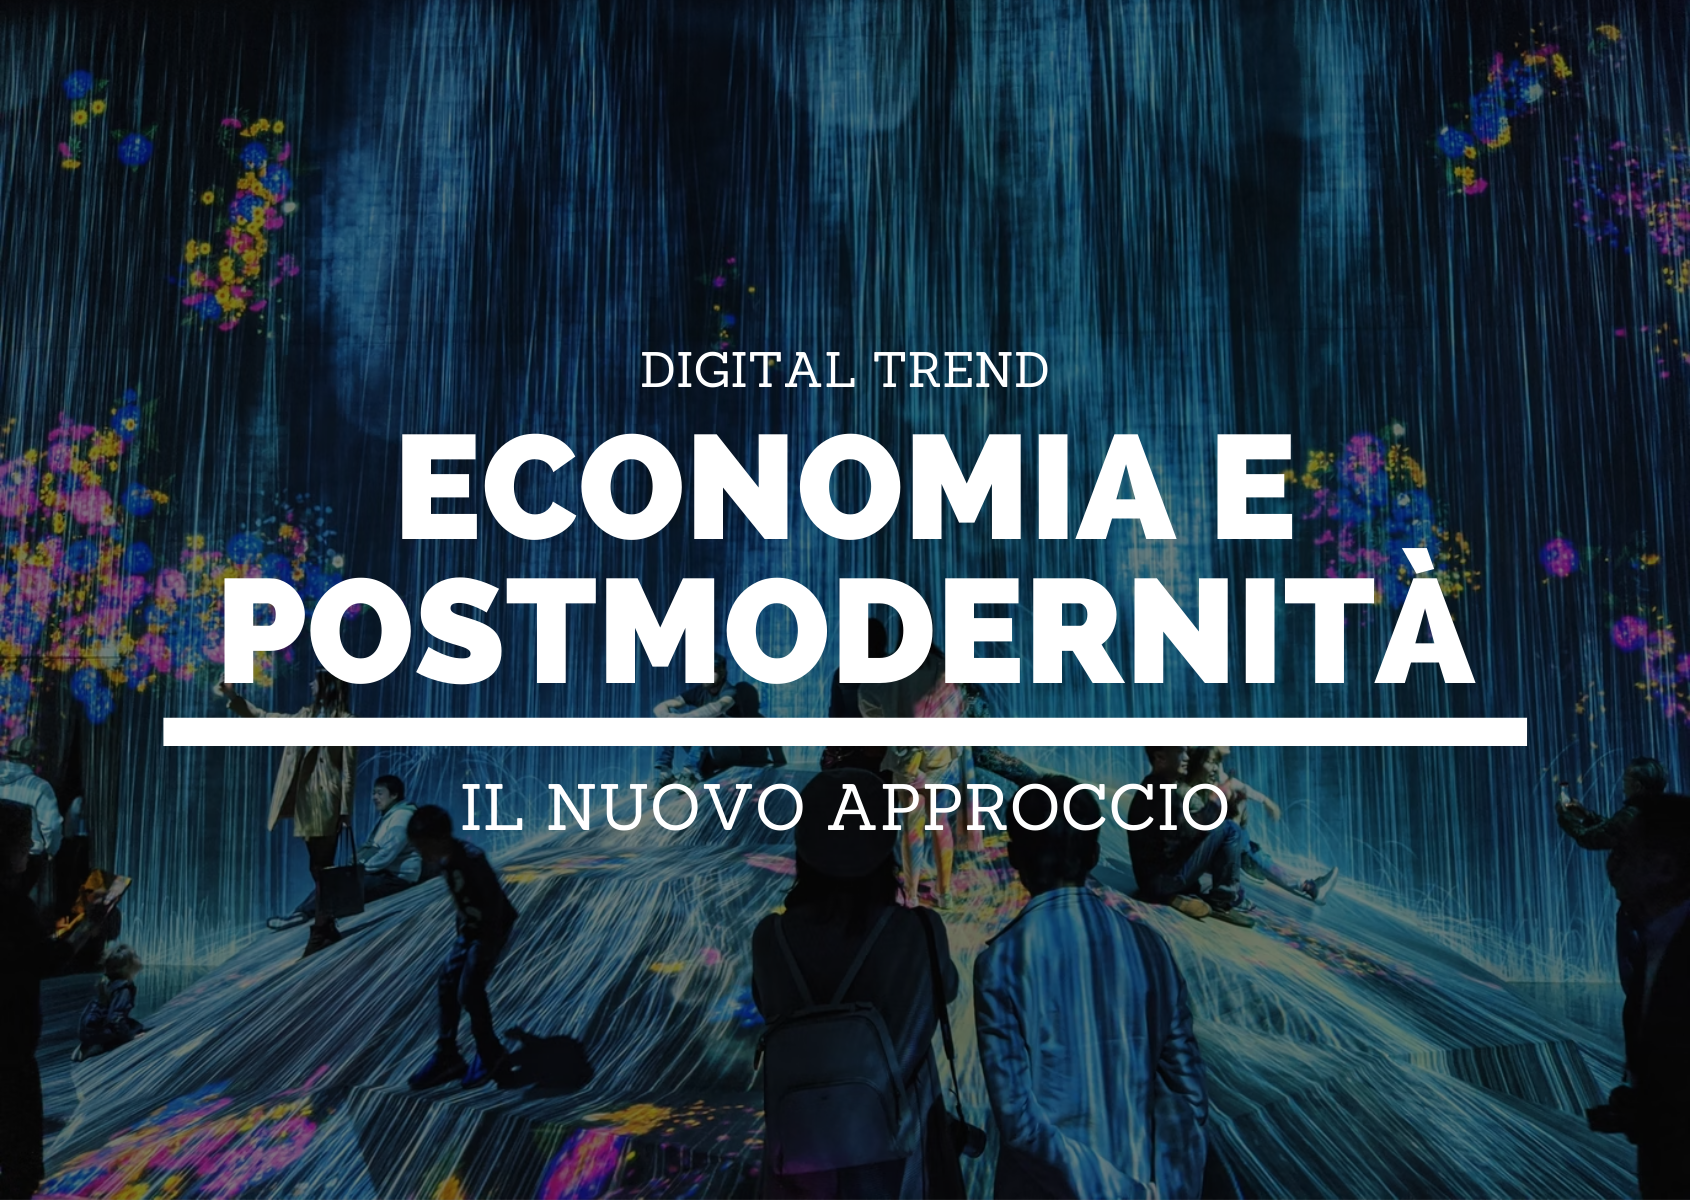 Economia-postmodernità-HEADER